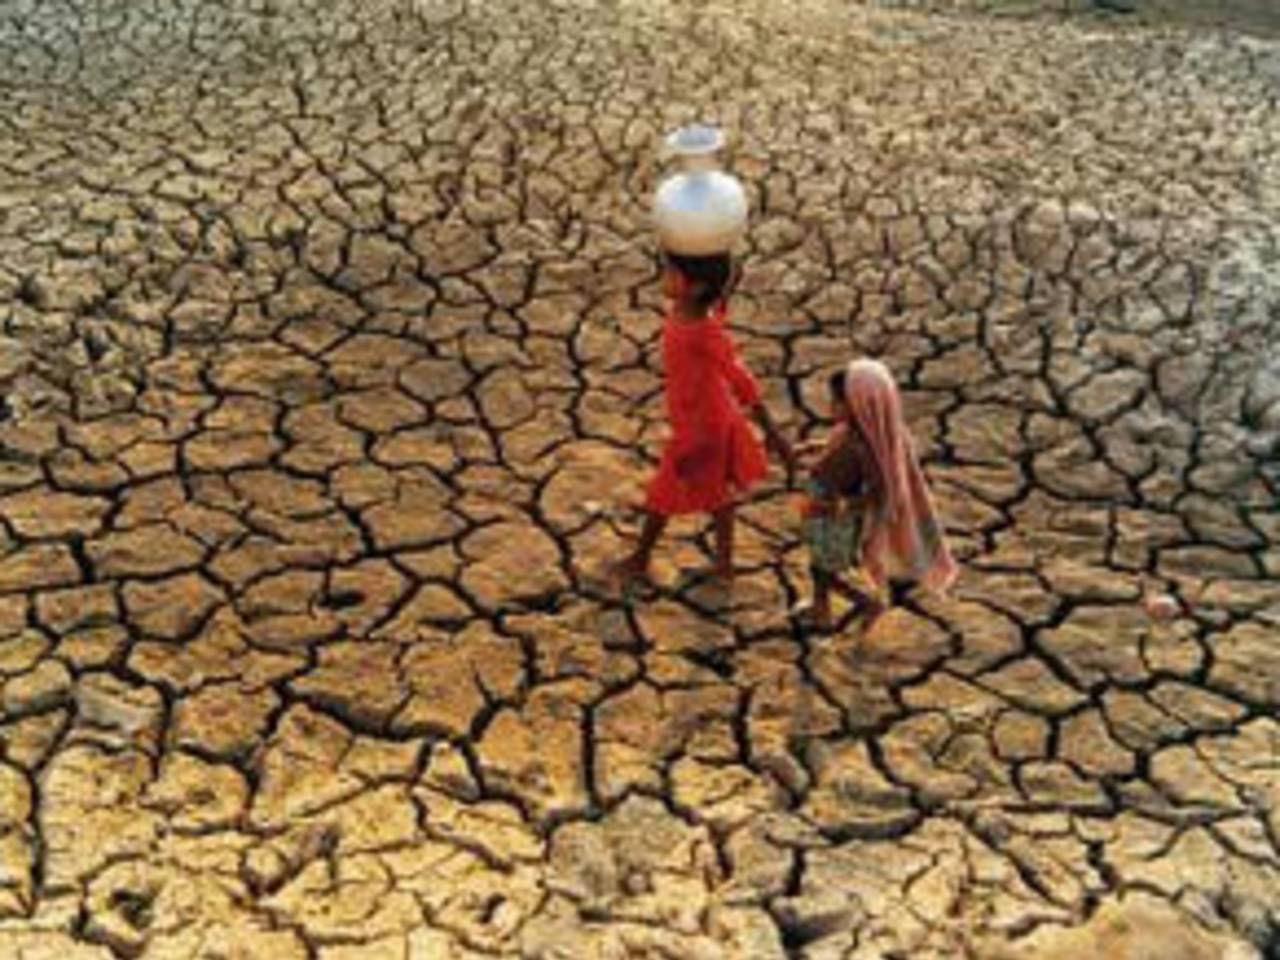 Les enfants victimes de l’extrême sécheresse dans certaines régions d’Afrique sont « au bord de la catastrophe », alerte l’Unicef 1